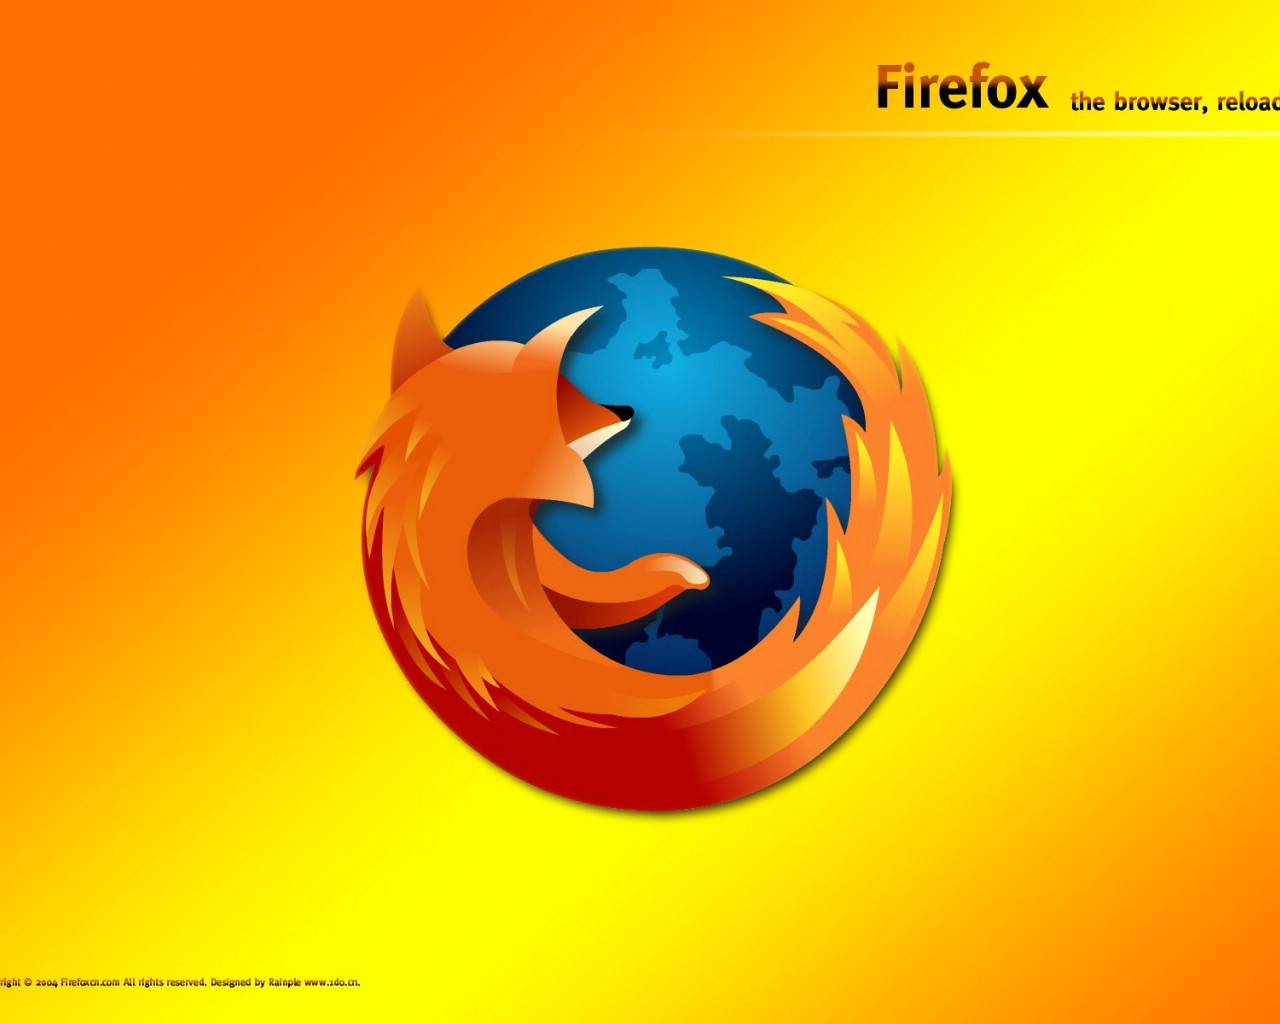 壁纸1280x1024Firefox 2 16壁纸 Firefox壁纸 Firefox图片 Firefox素材 品牌壁纸 品牌图库 品牌图片素材桌面壁纸